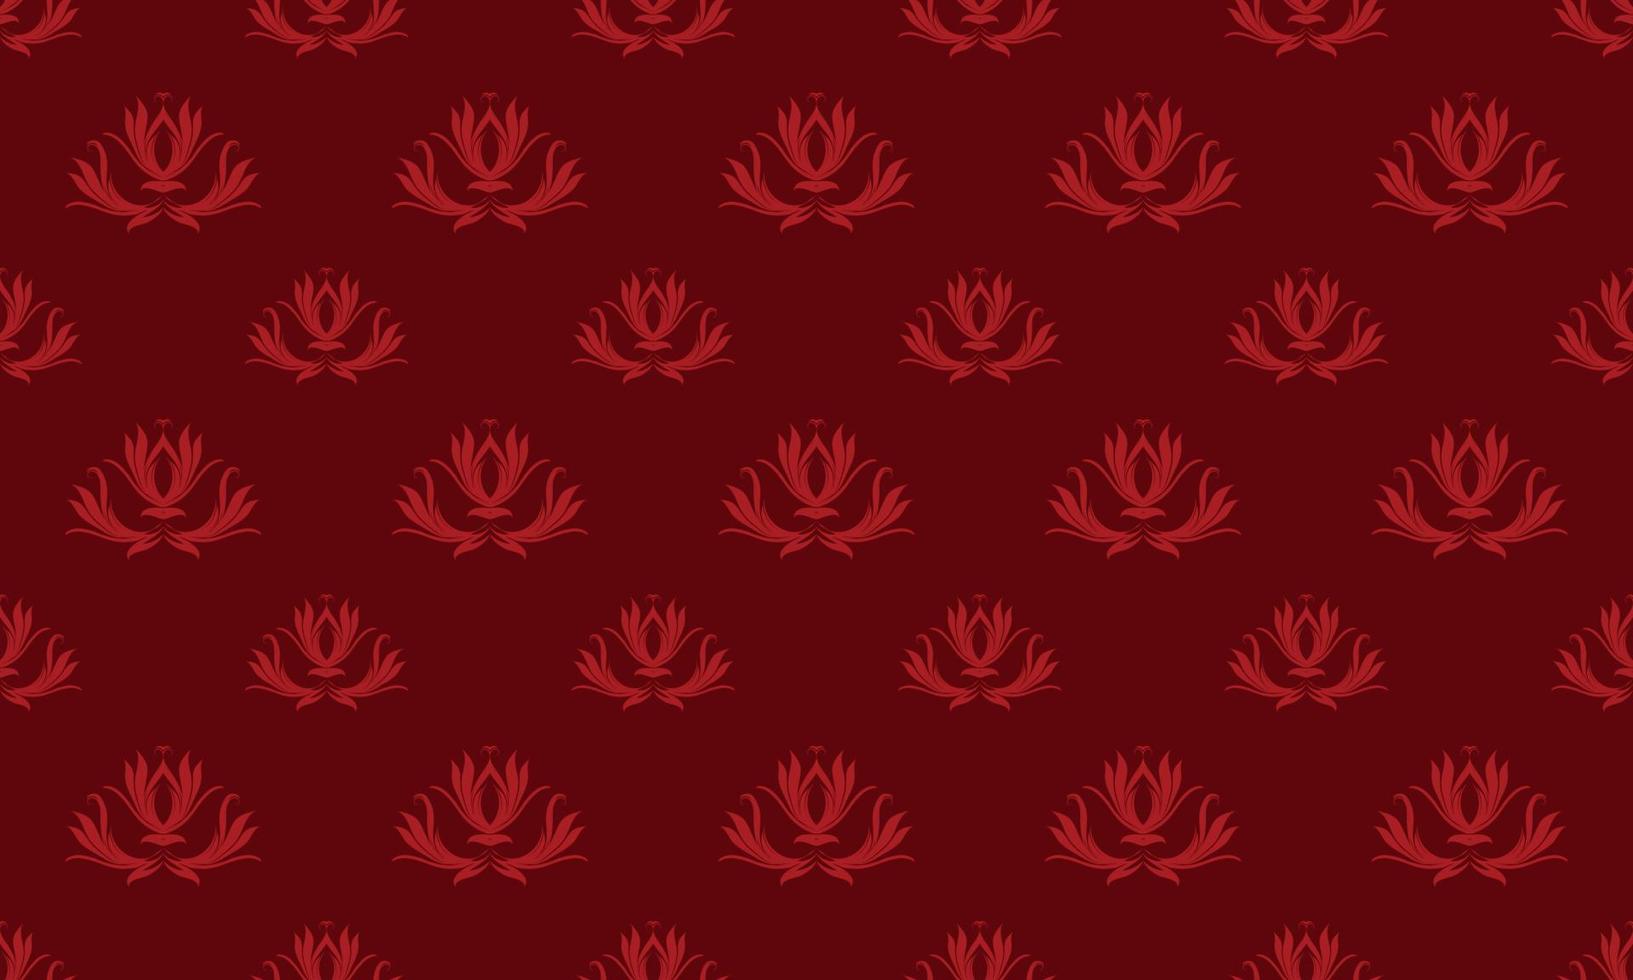 Damask Fleur de Lis wallpaper vector seamless pattern wallpaper